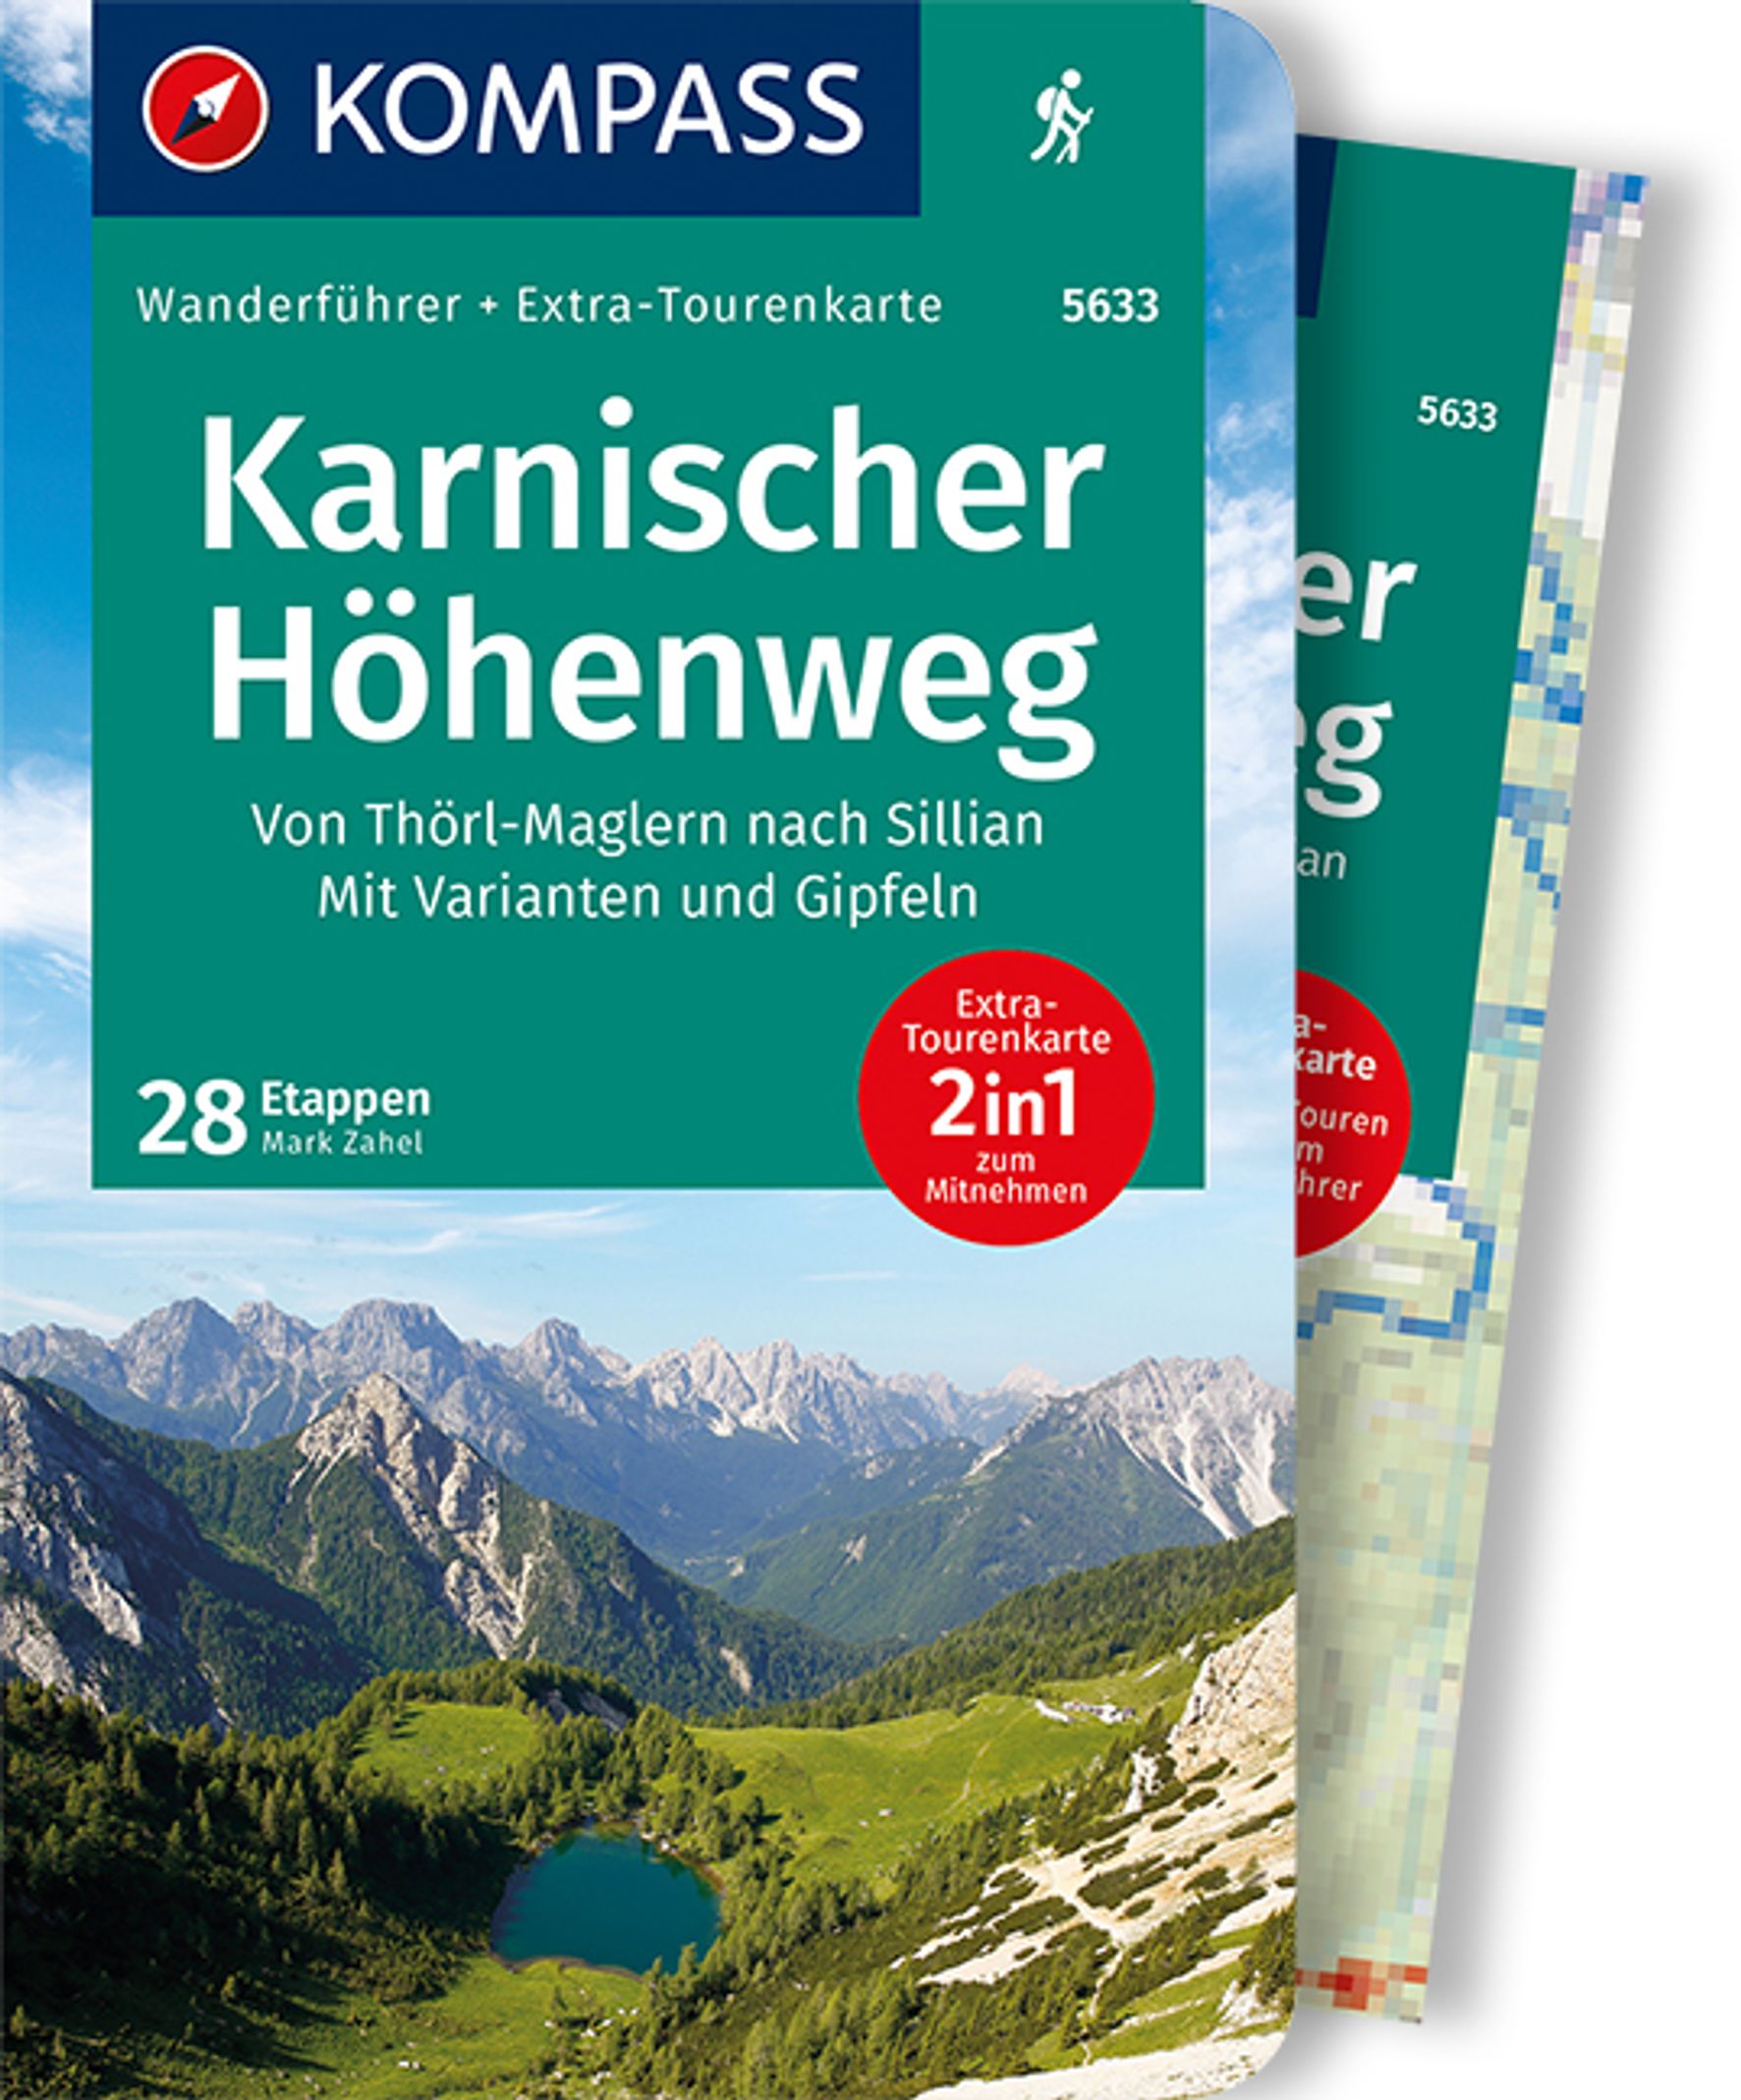 MAIRDUMONT Karnischer Höhenweg, Von Thörl-Maglern nach Sillian, Mit Varianten und Gipfeln, 28 Etappen